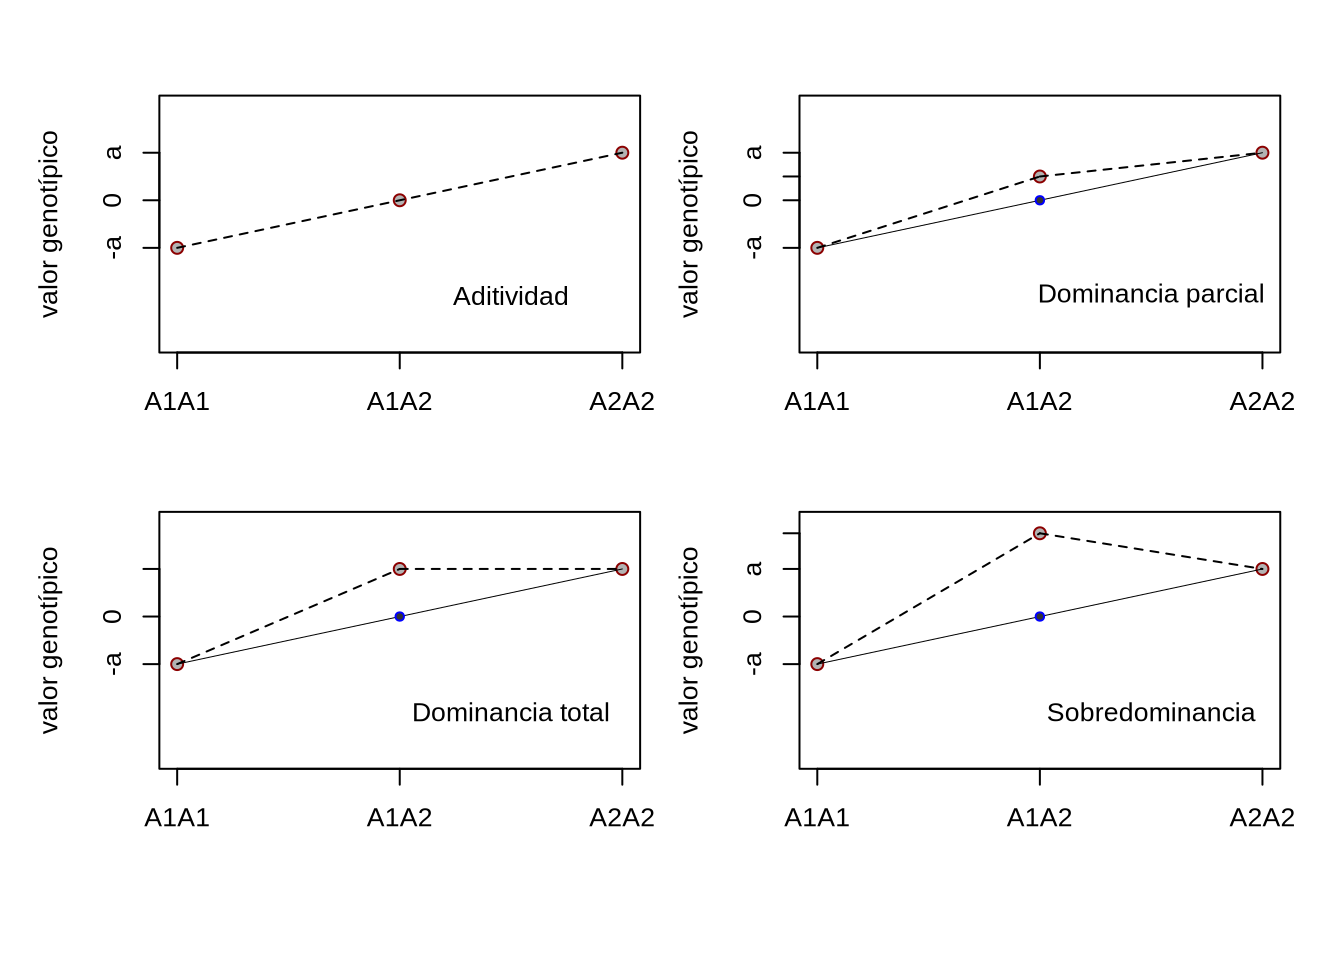 Representación de los valores genotípicos correspondiente a los diferentes tipos de dominancia en un locus con dos alelos.